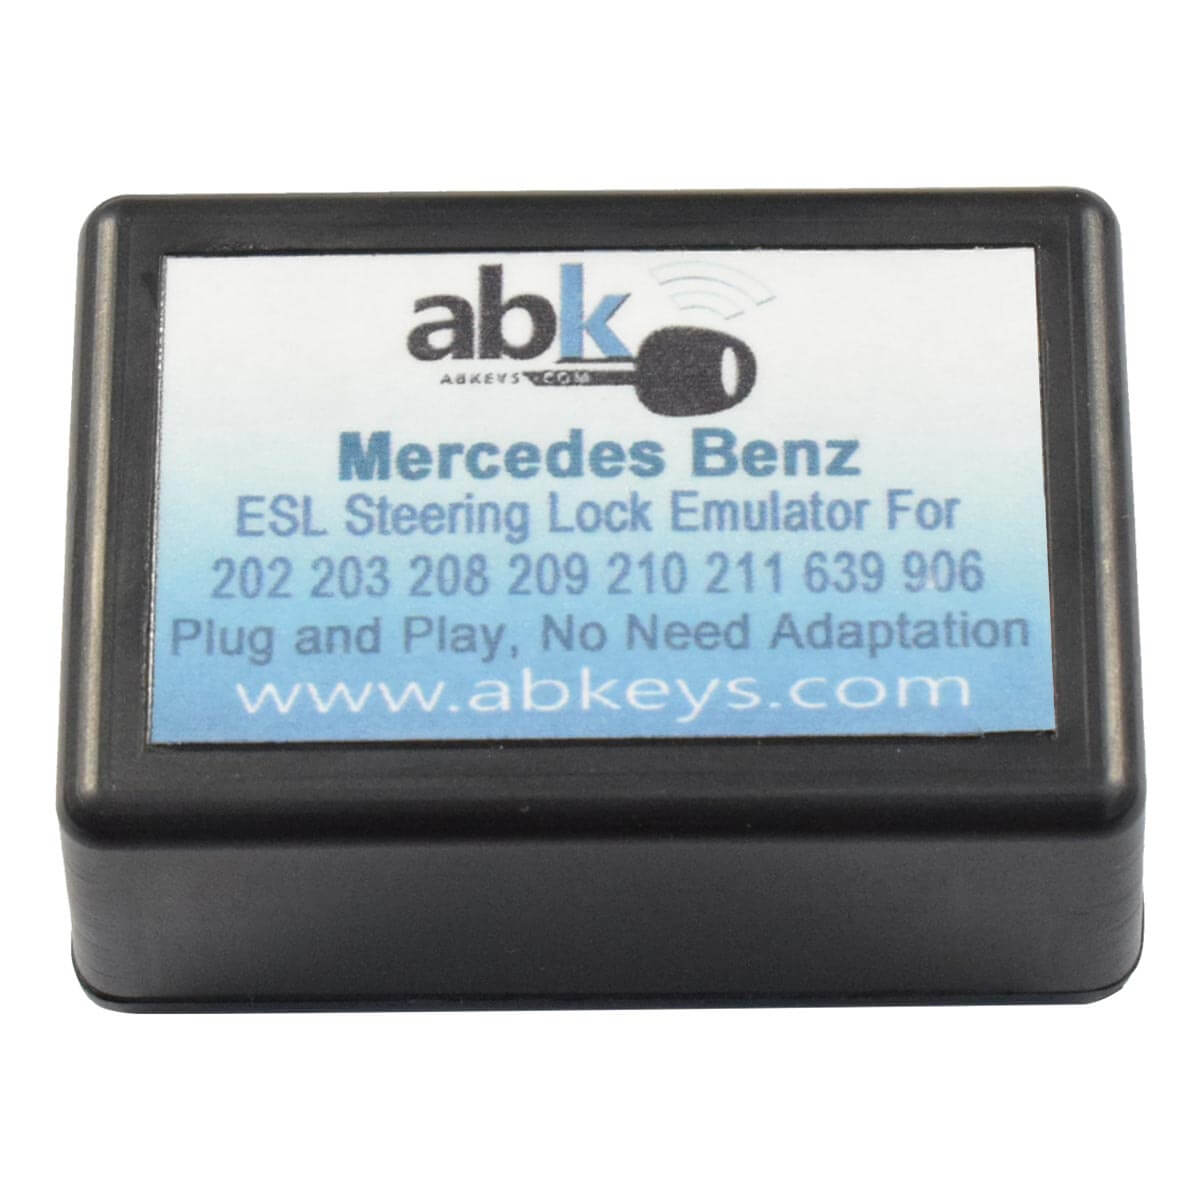 Mercedes Benz ESL / ELV Steering Lock Emulator For W202 / W203 / W210 /  W209 / W211 / W639 / W906 Plug & Play